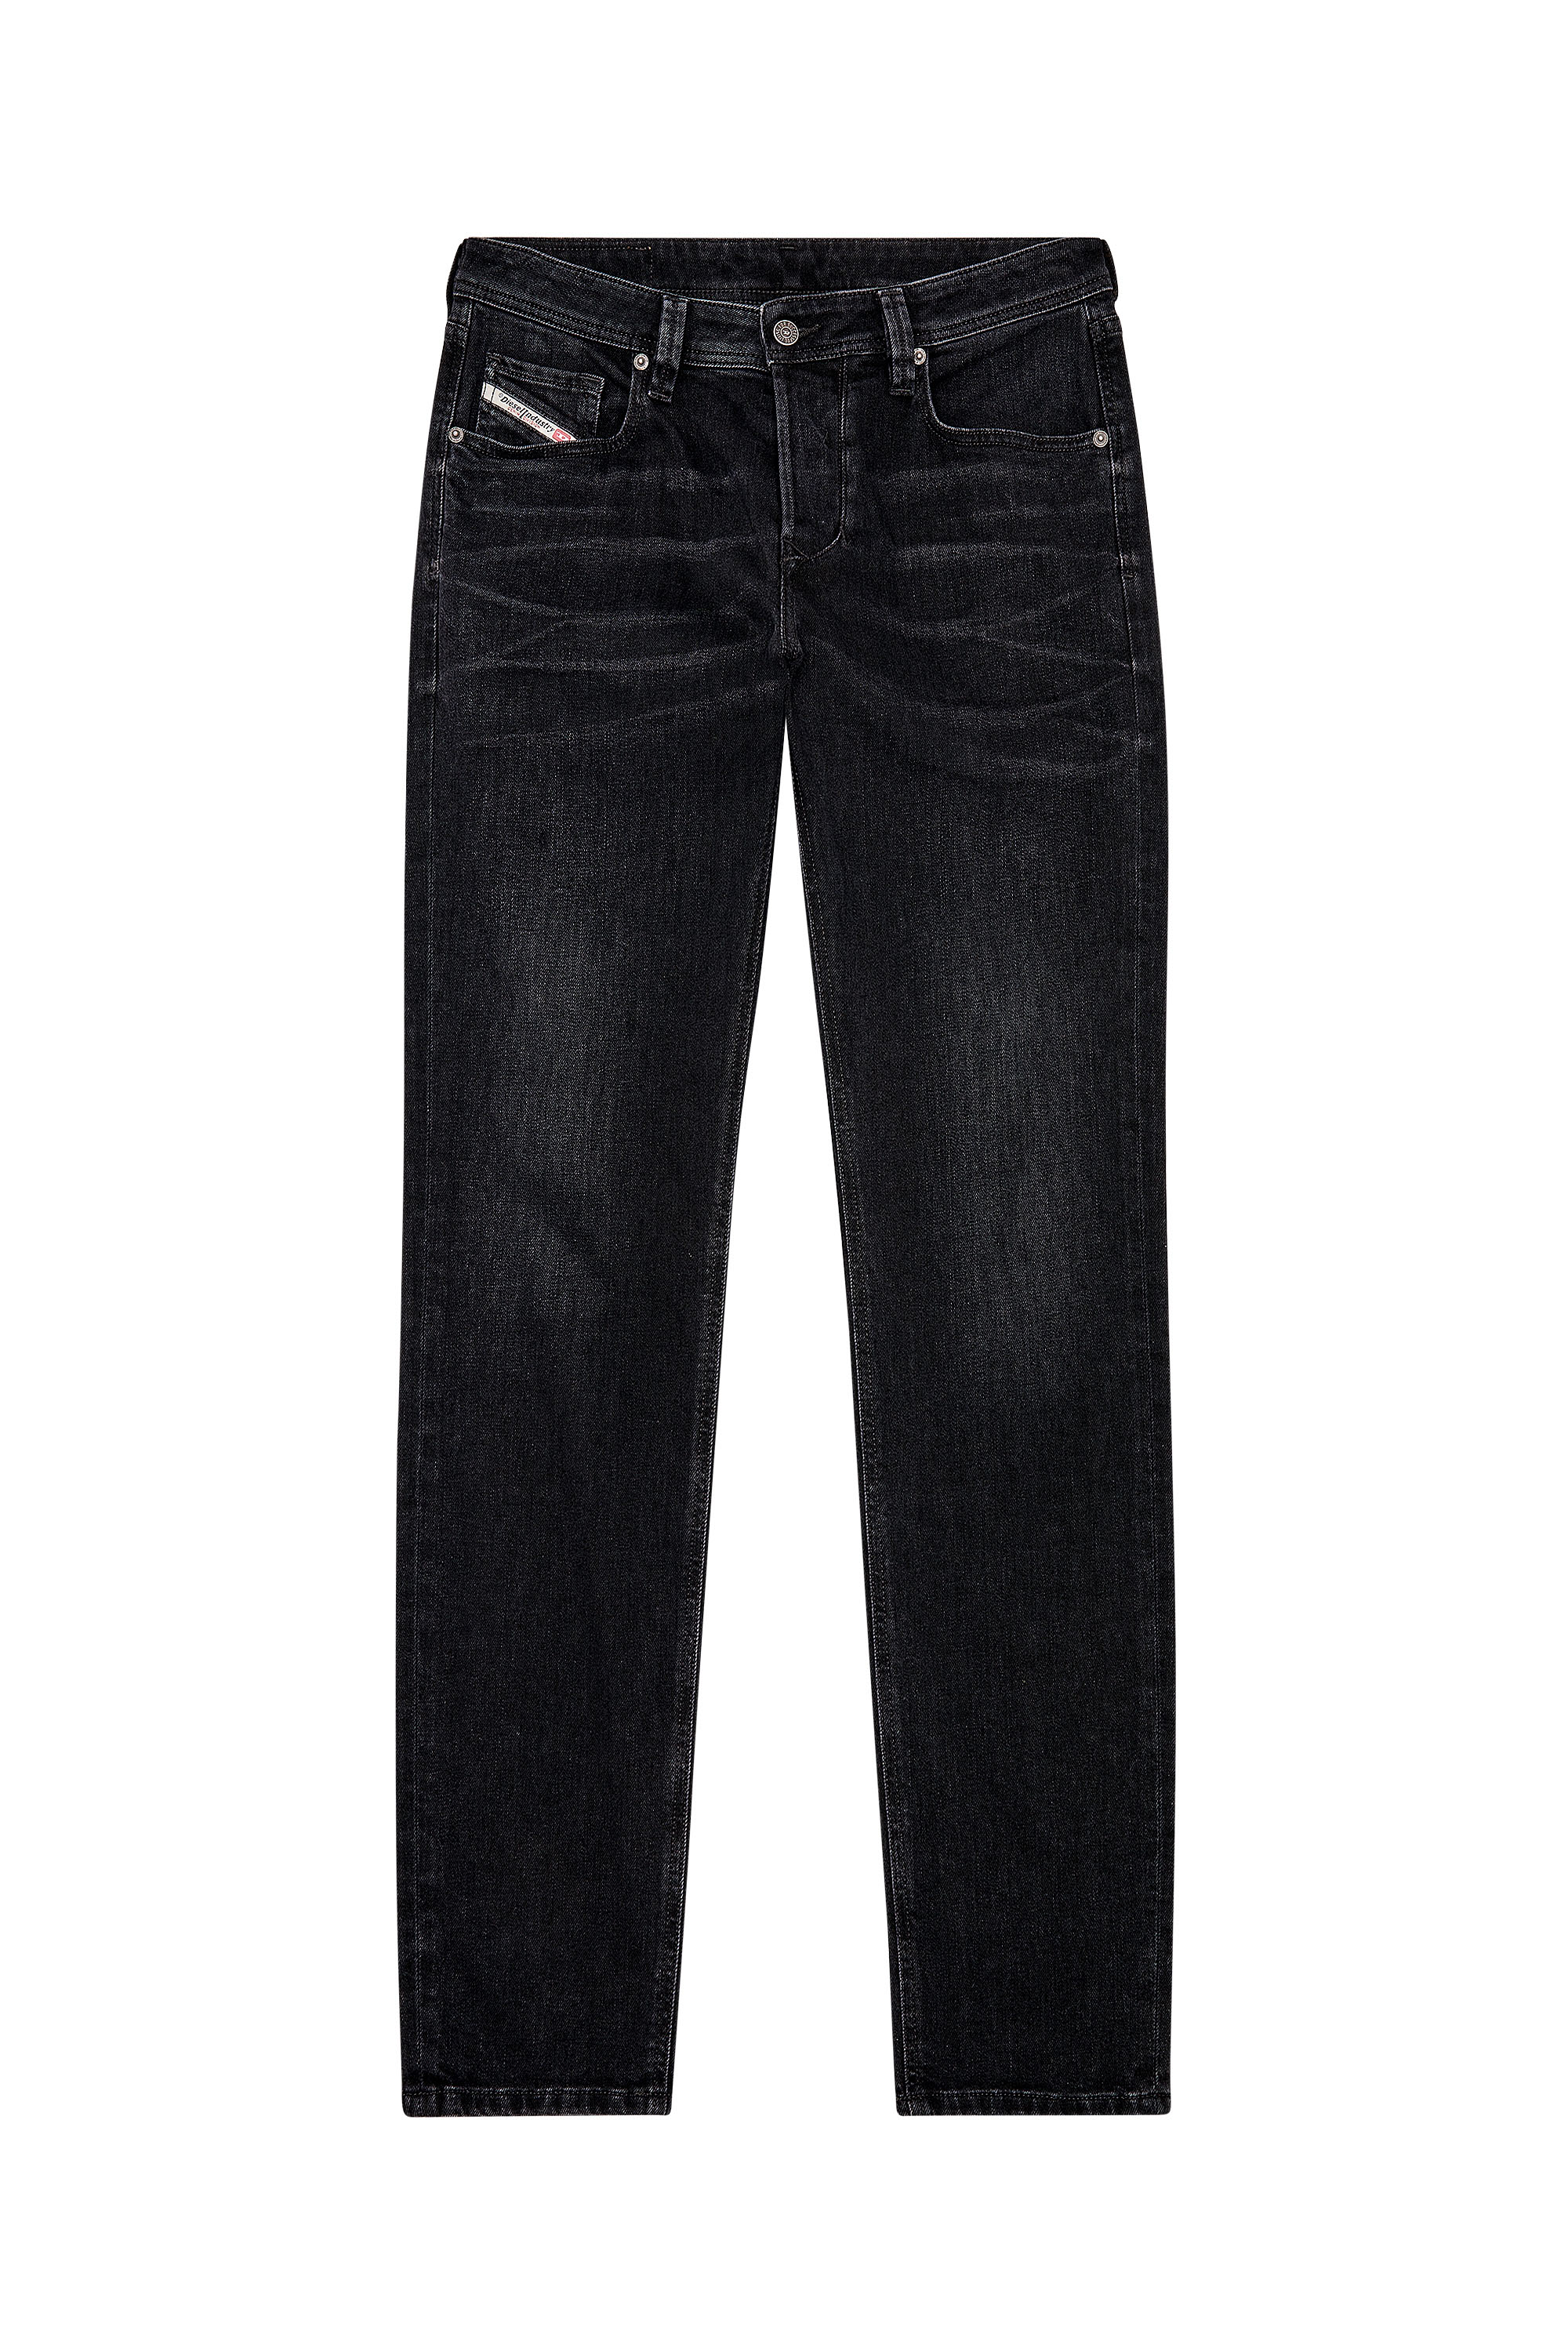 Diesel - Tapered Jeans 1986 Larkee-Beex 09D48, Black/Dark grey - Image 1